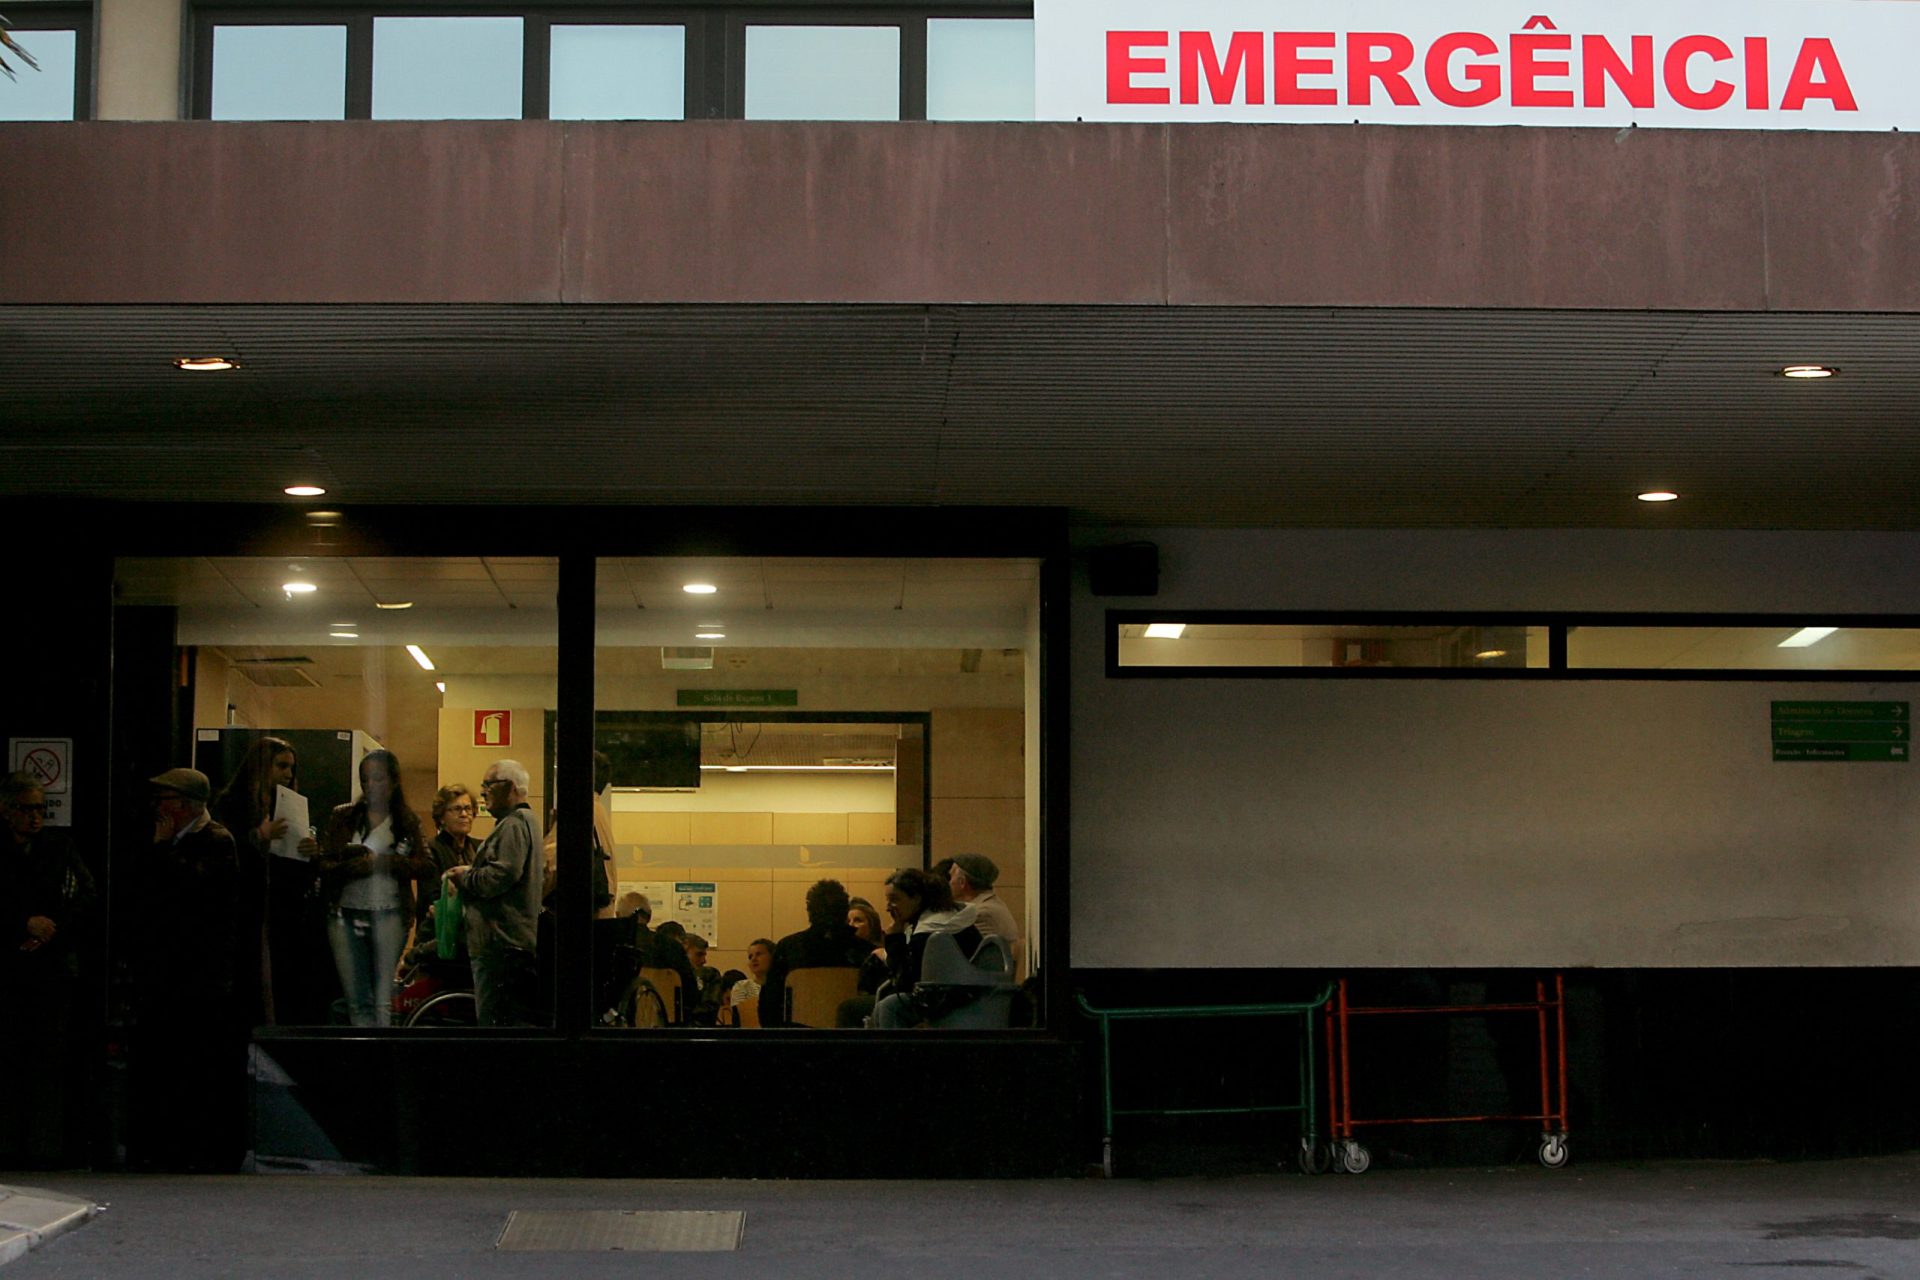 Chefes da equipa de urgência do Hospital S. Francisco Xavier pedem demissão devido a escala de agosto